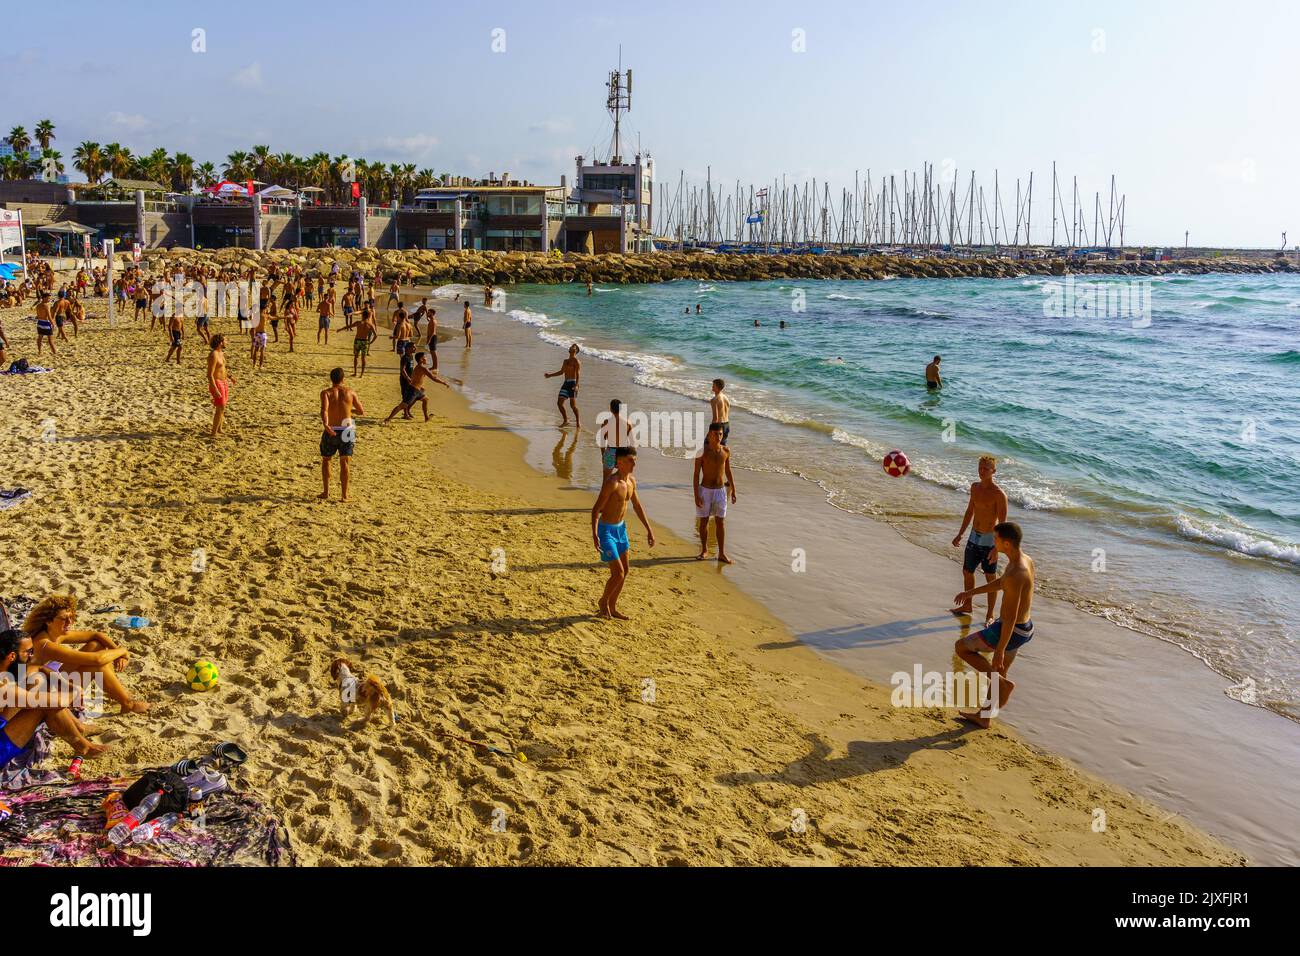 Tel-Aviv, Israel - June 17, 2022: Beach scene with visitors in various activities, in Tel-Aviv, Israel Stock Photo